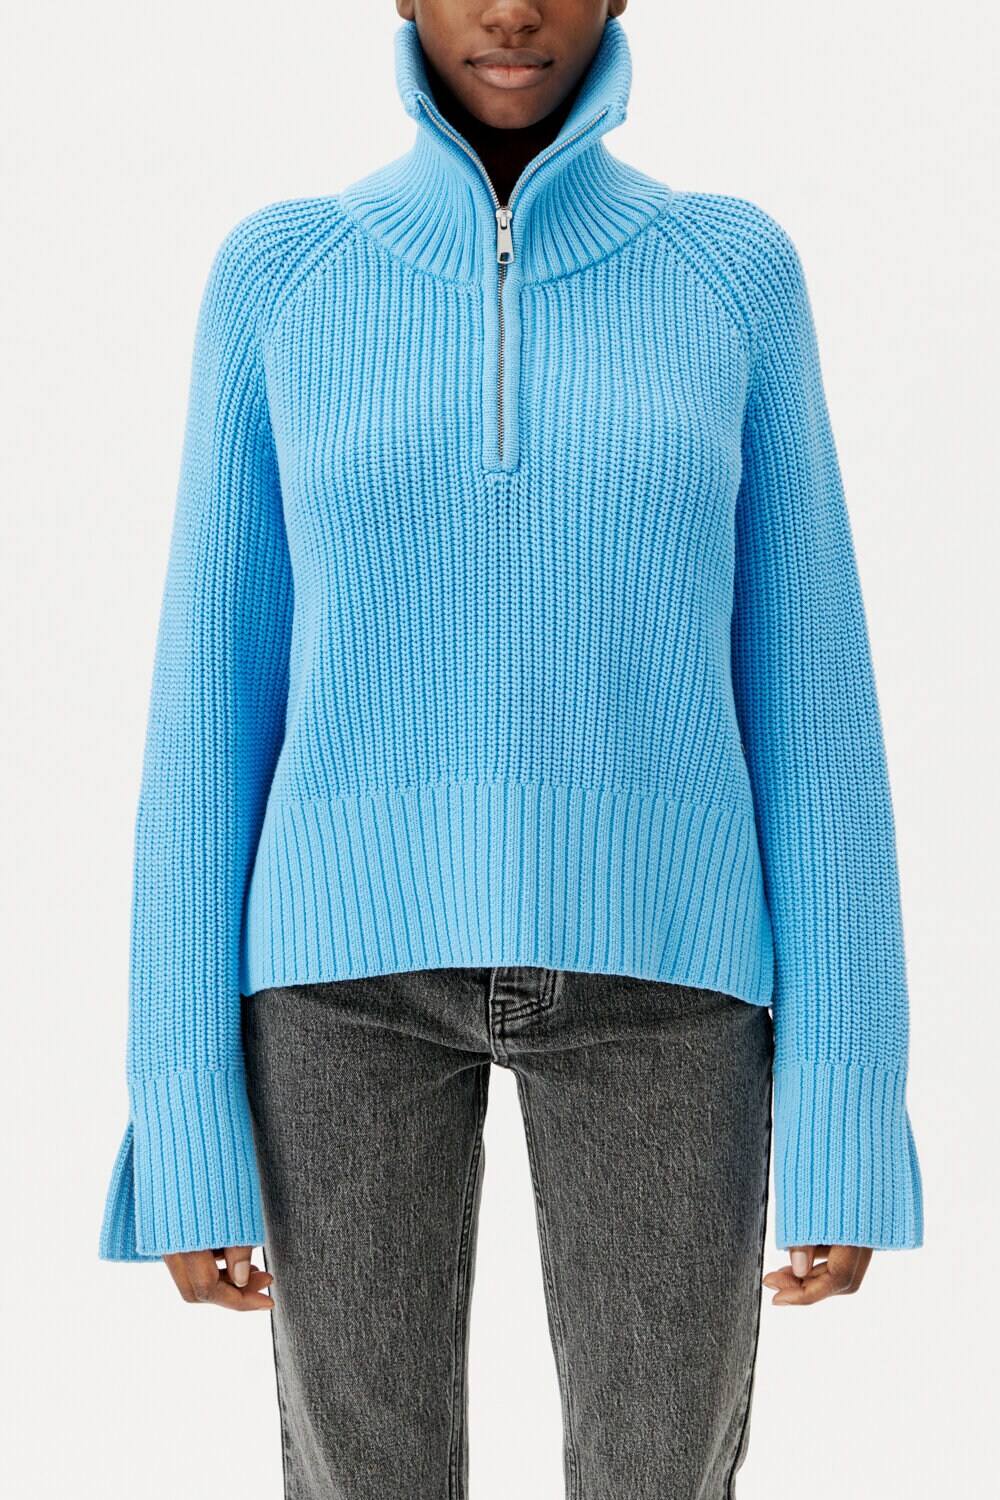 Cheri Sweater